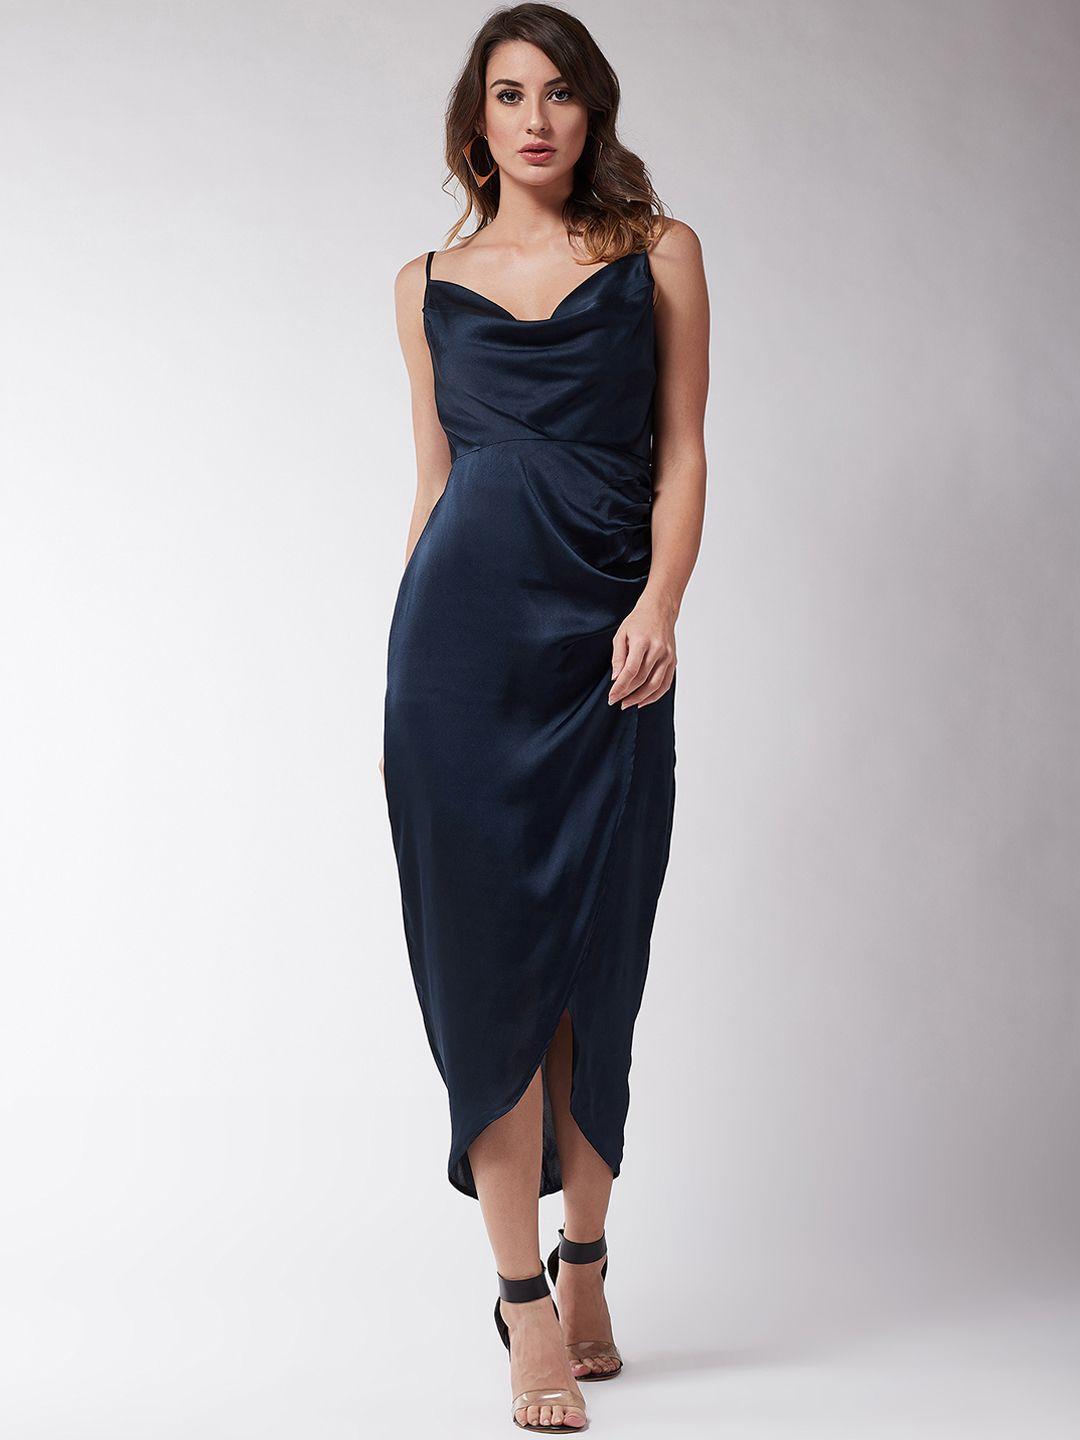 magre women solid navy blue sheath dress